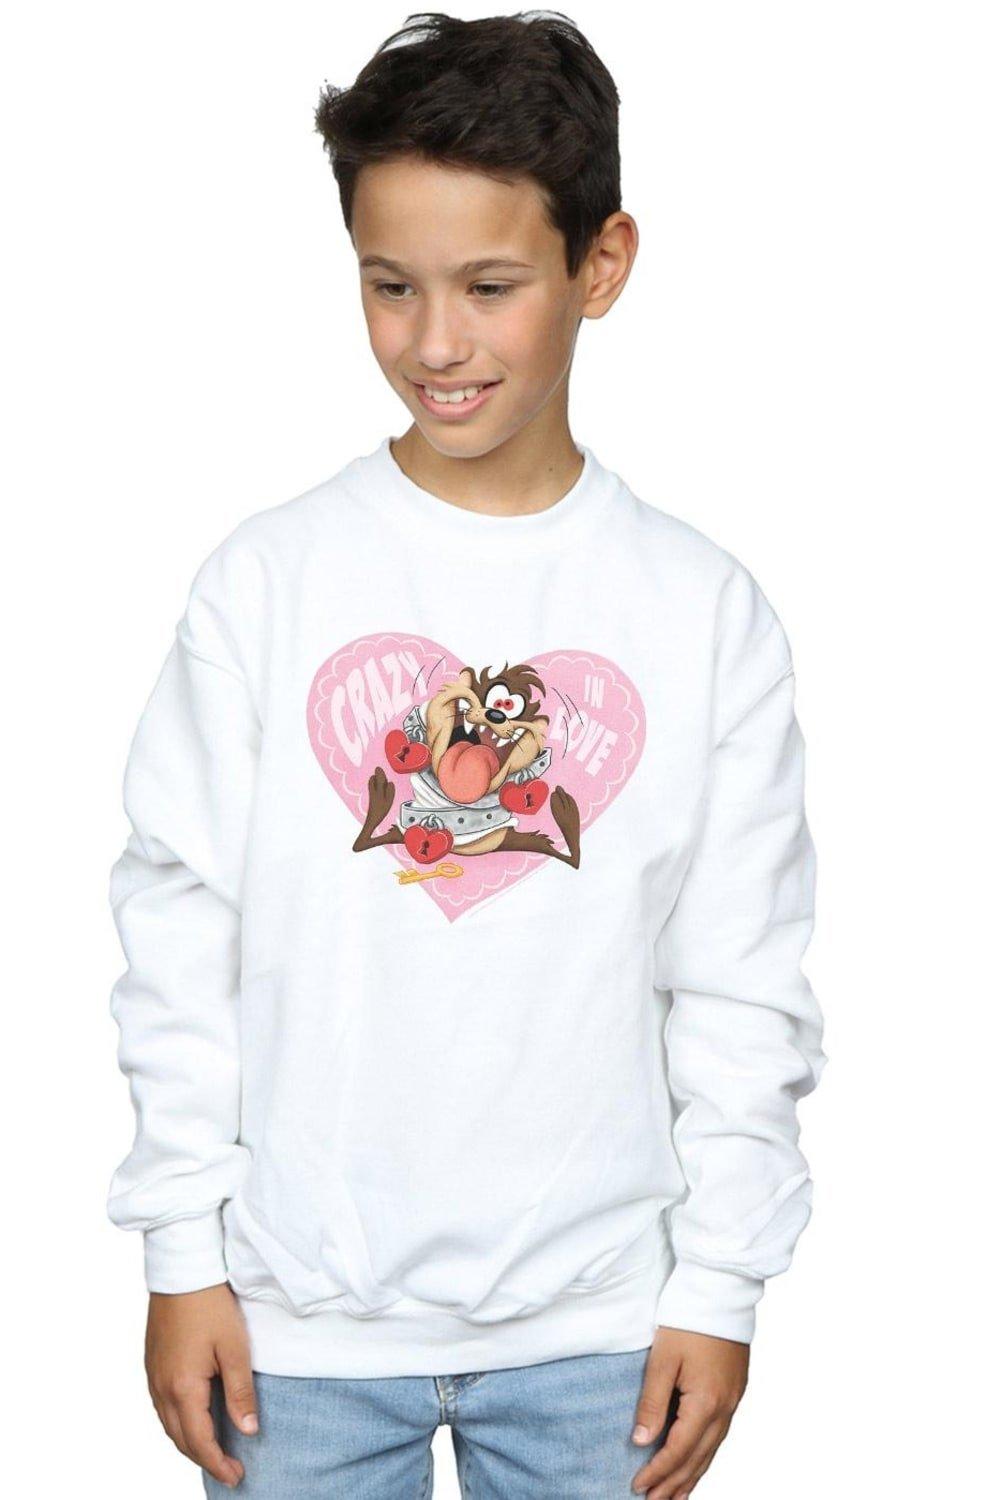 Taz Valentine’s Day Crazy In Love Sweatshirt